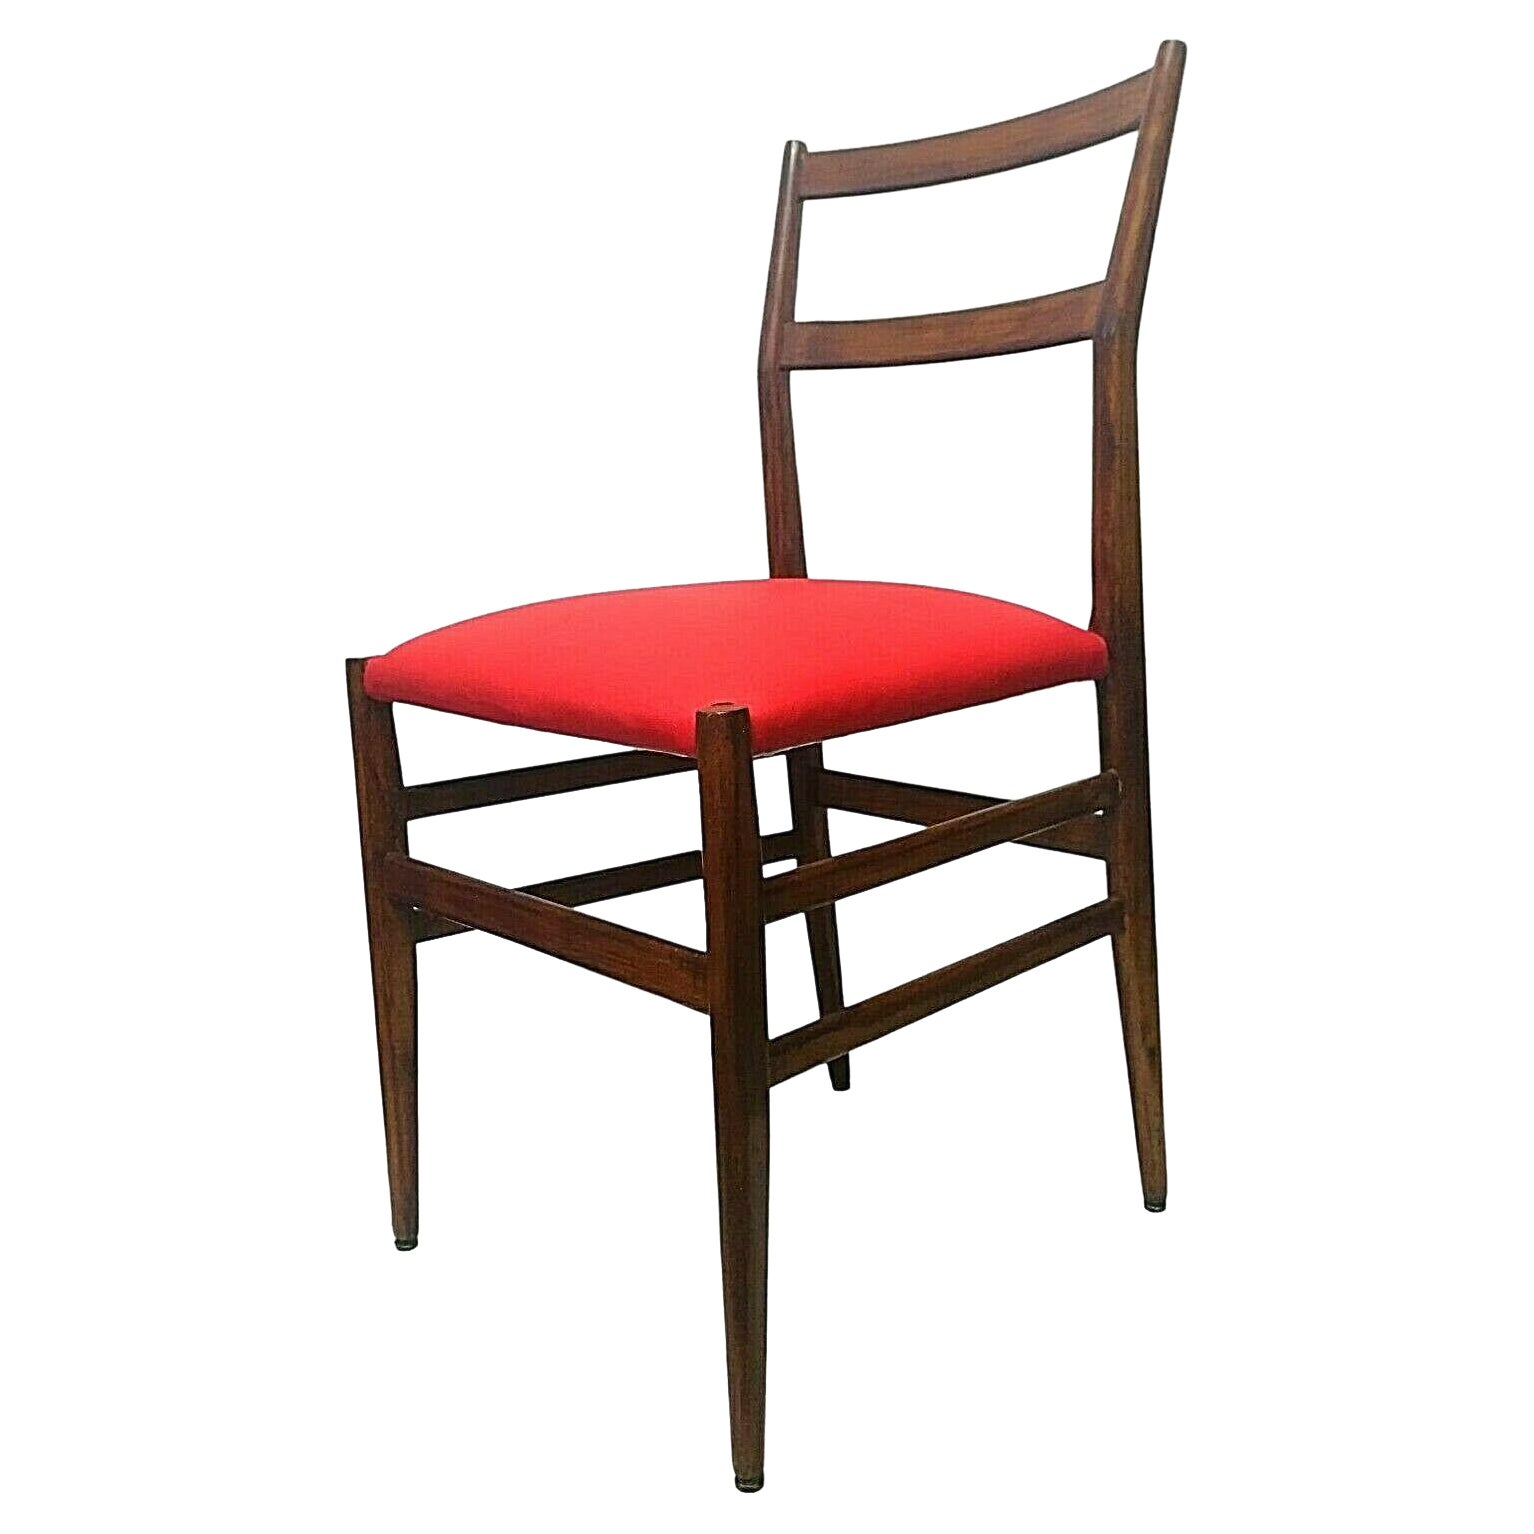 Original "Leggera" Chair, Design Gio Ponti for Cassina, 1949